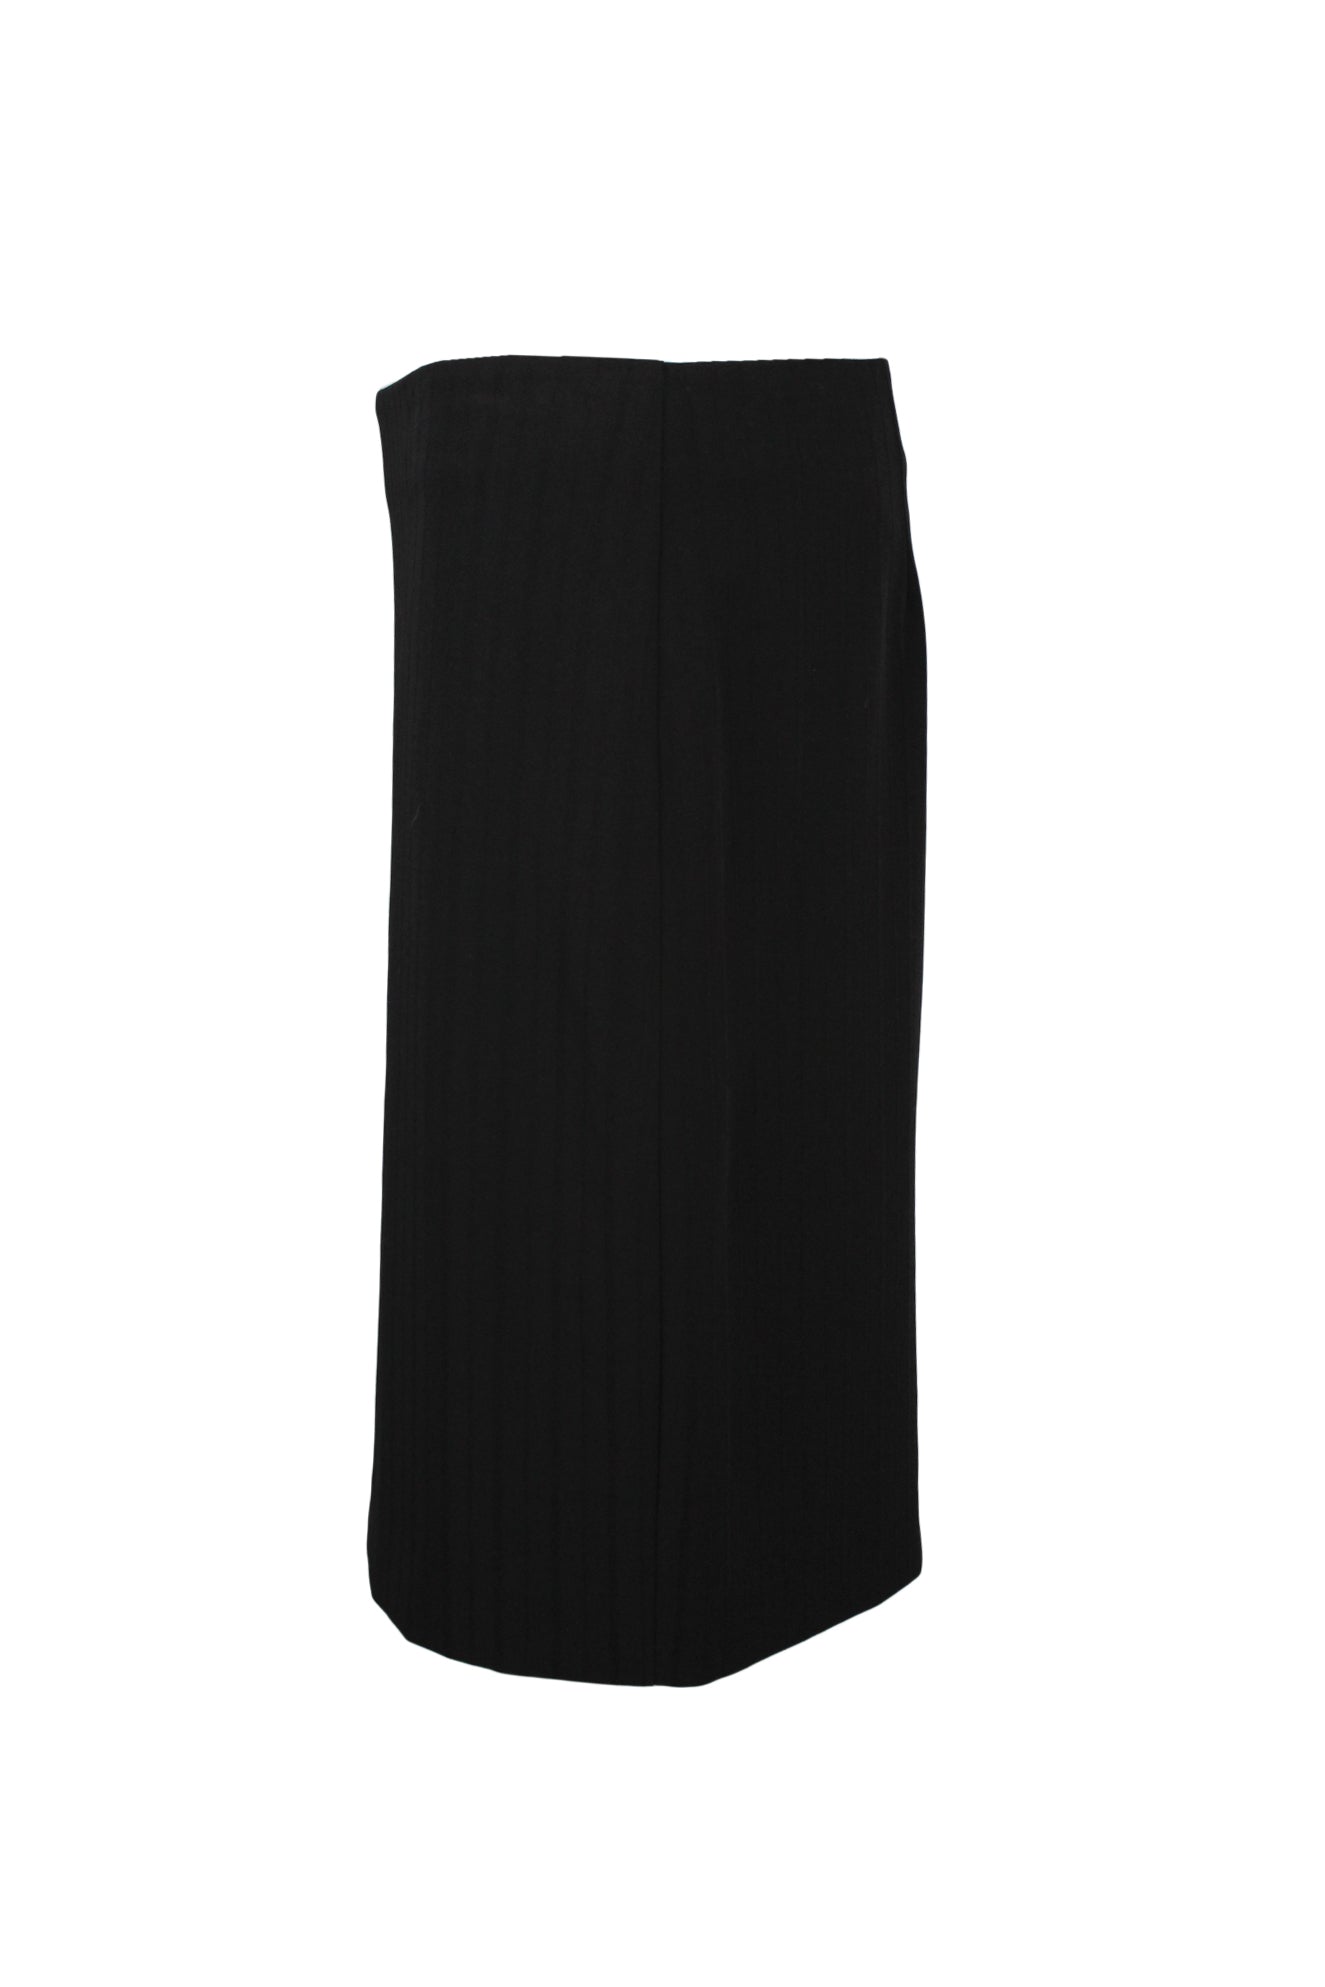 profile of black knee length skirt